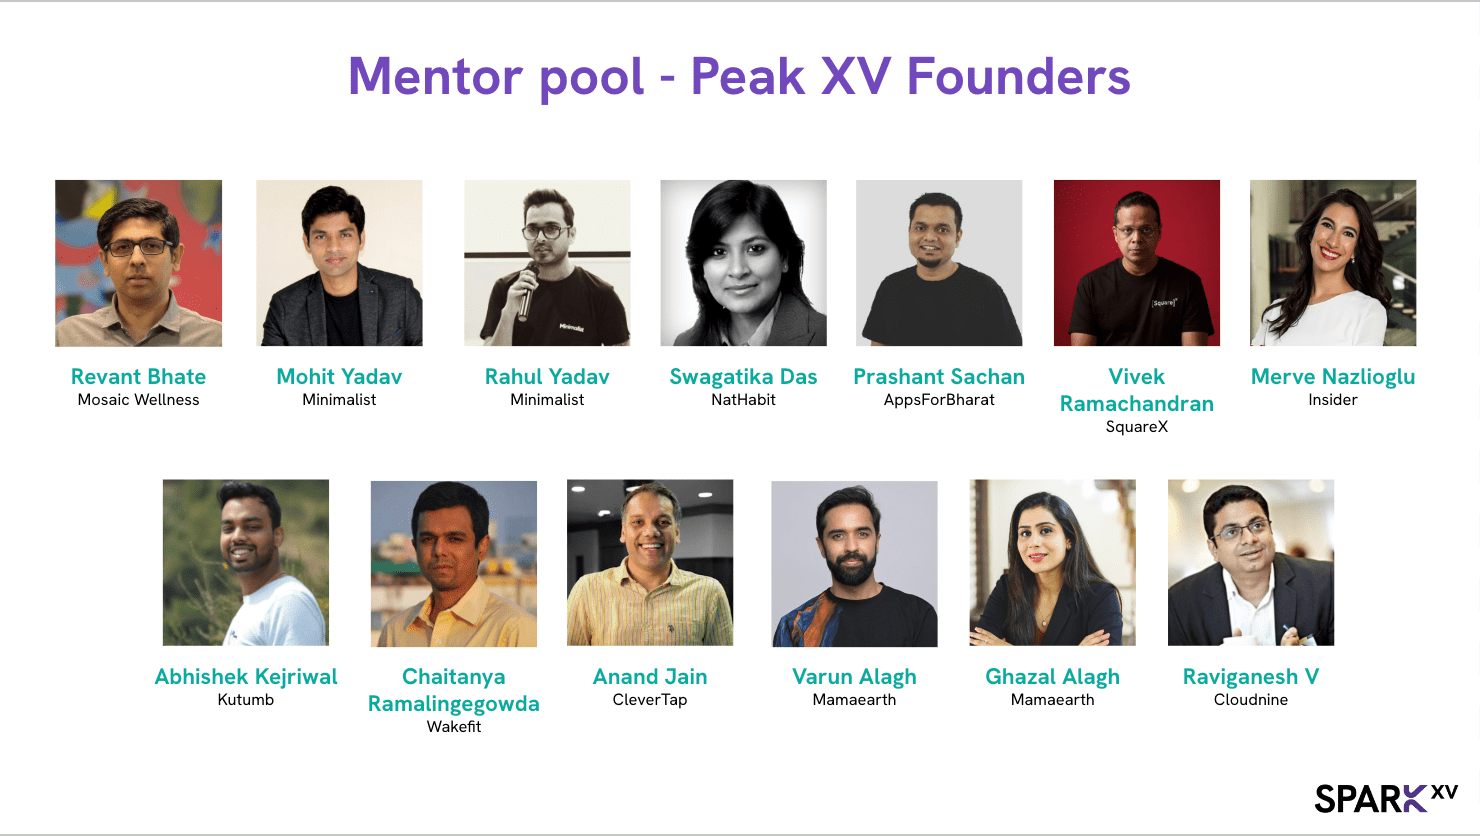 Peak XV Spark Mentors